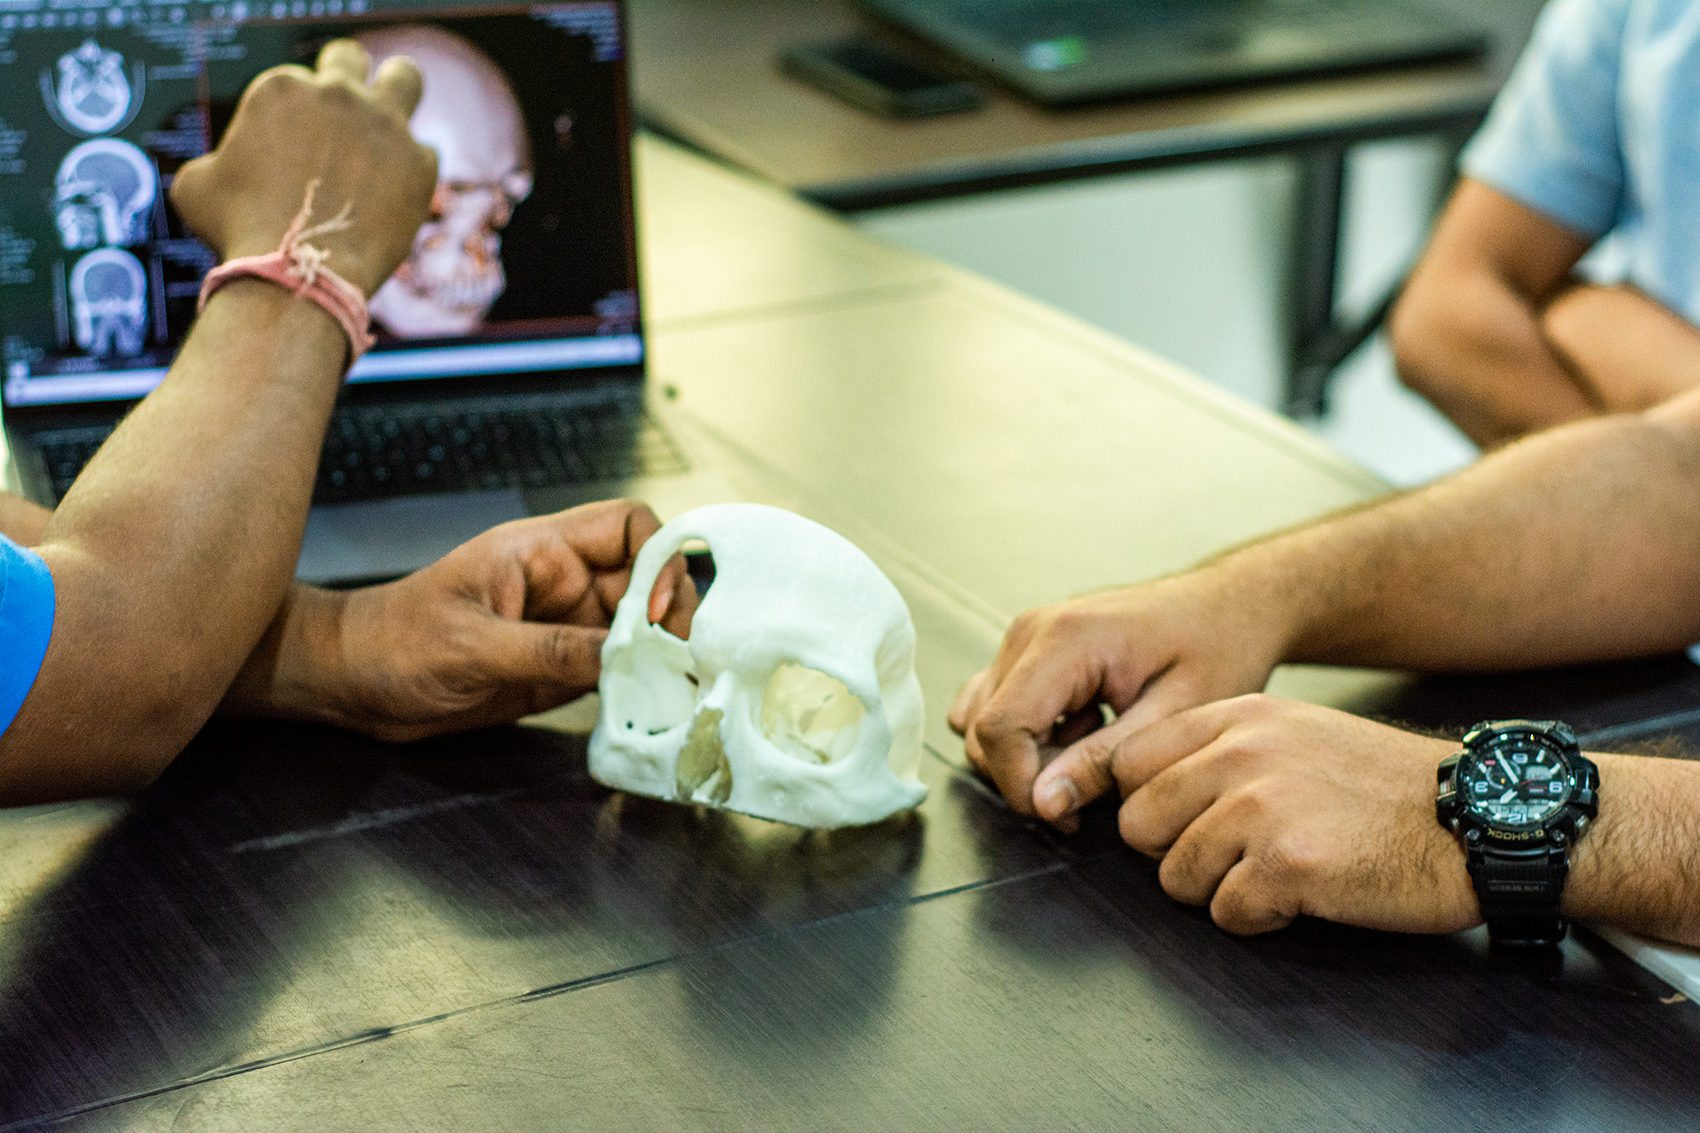 Les implants imprimés en 3D de LUCID Implants promettent de démocratiser l'accès aux soins. © LUCID Implants